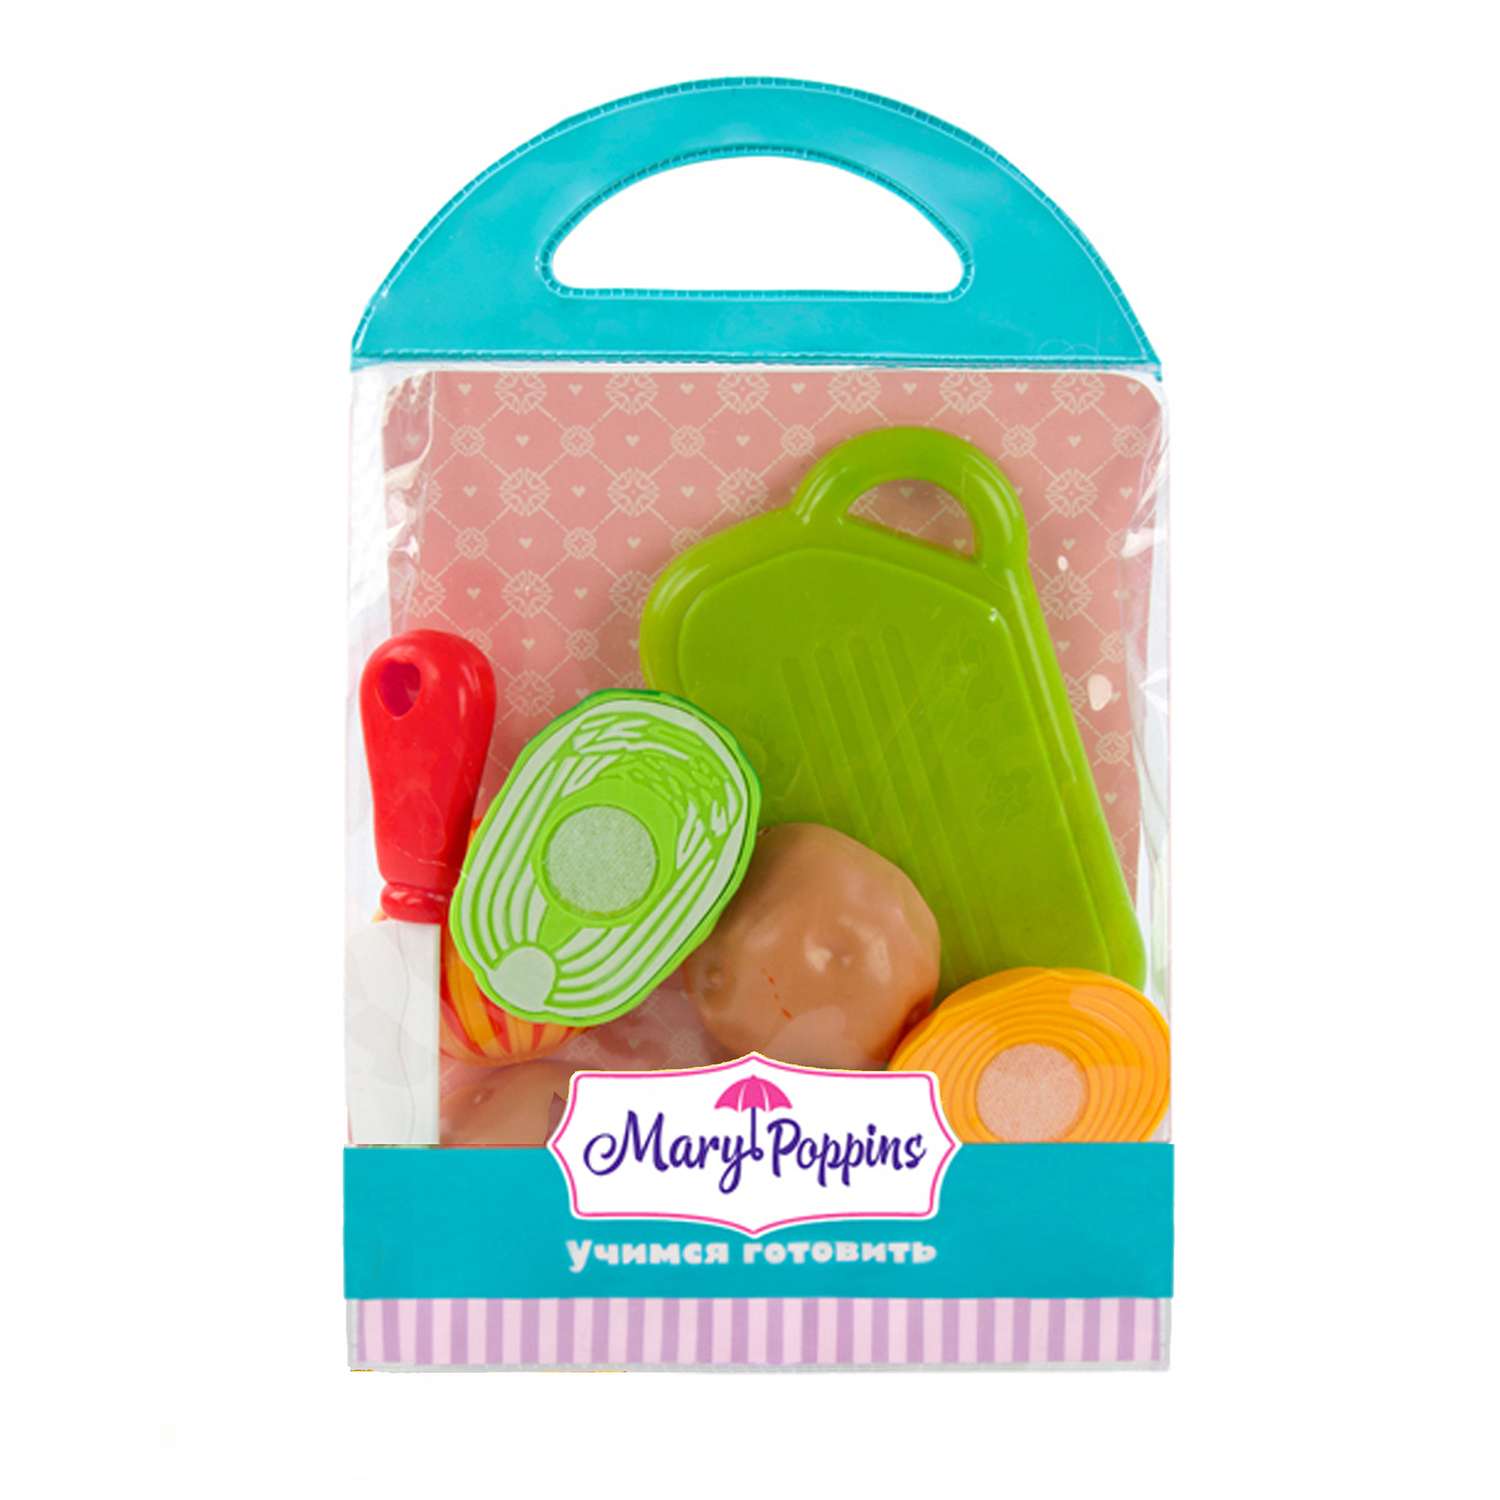 Детский игровой набор Mary Poppins овощей на липучках. Учимся готовить овощи - фото 2